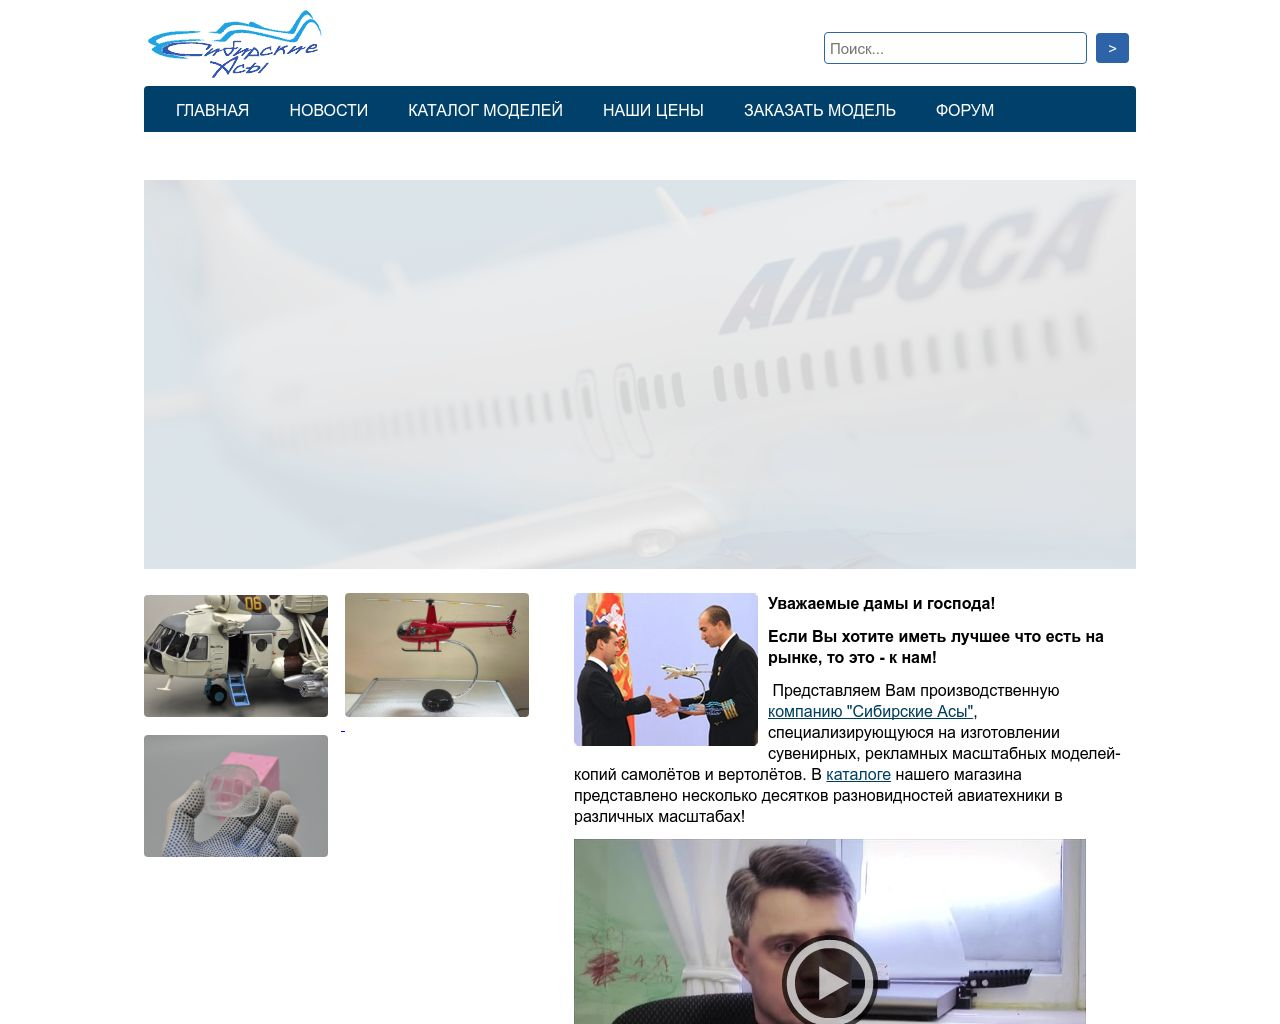 Изображение сайта aeromodel.ru в разрешении 1280x1024